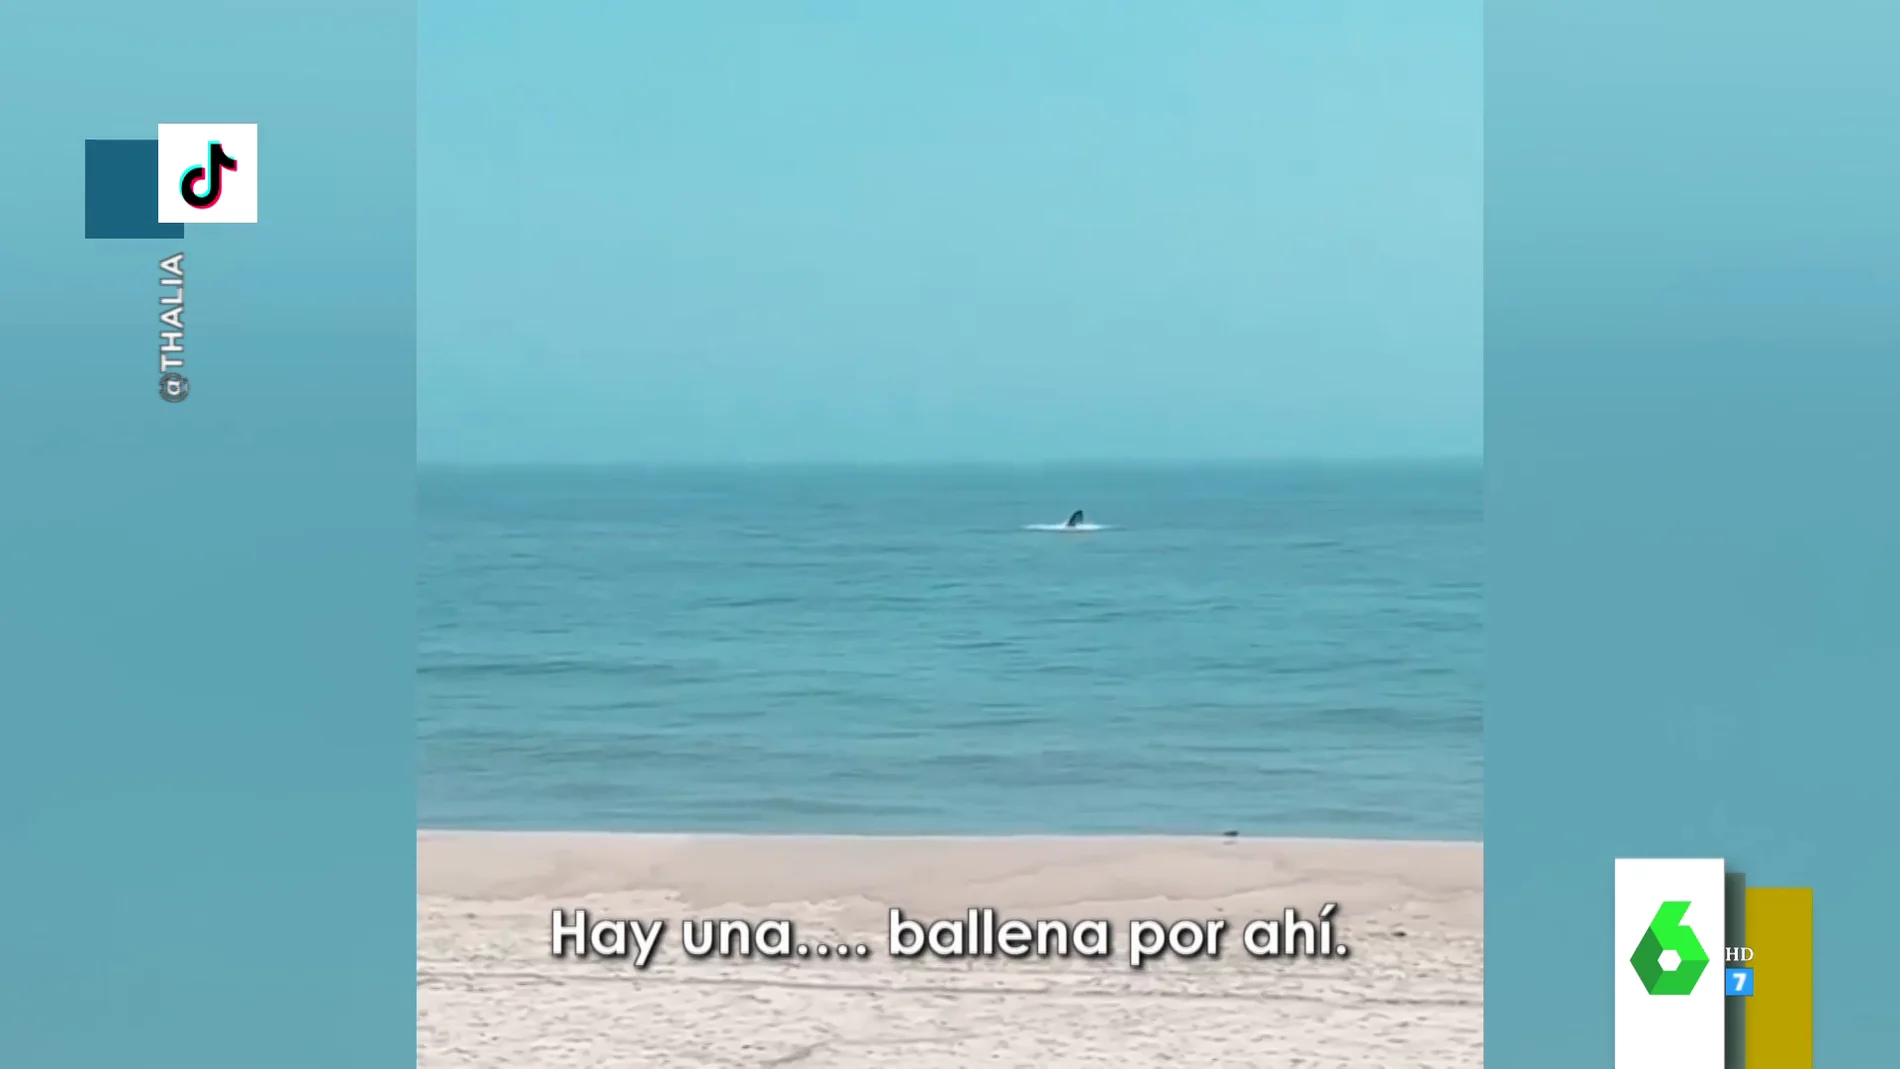 El espectacular vídeo en el que Thalia muestra el coletazo de una ballena en plena playa